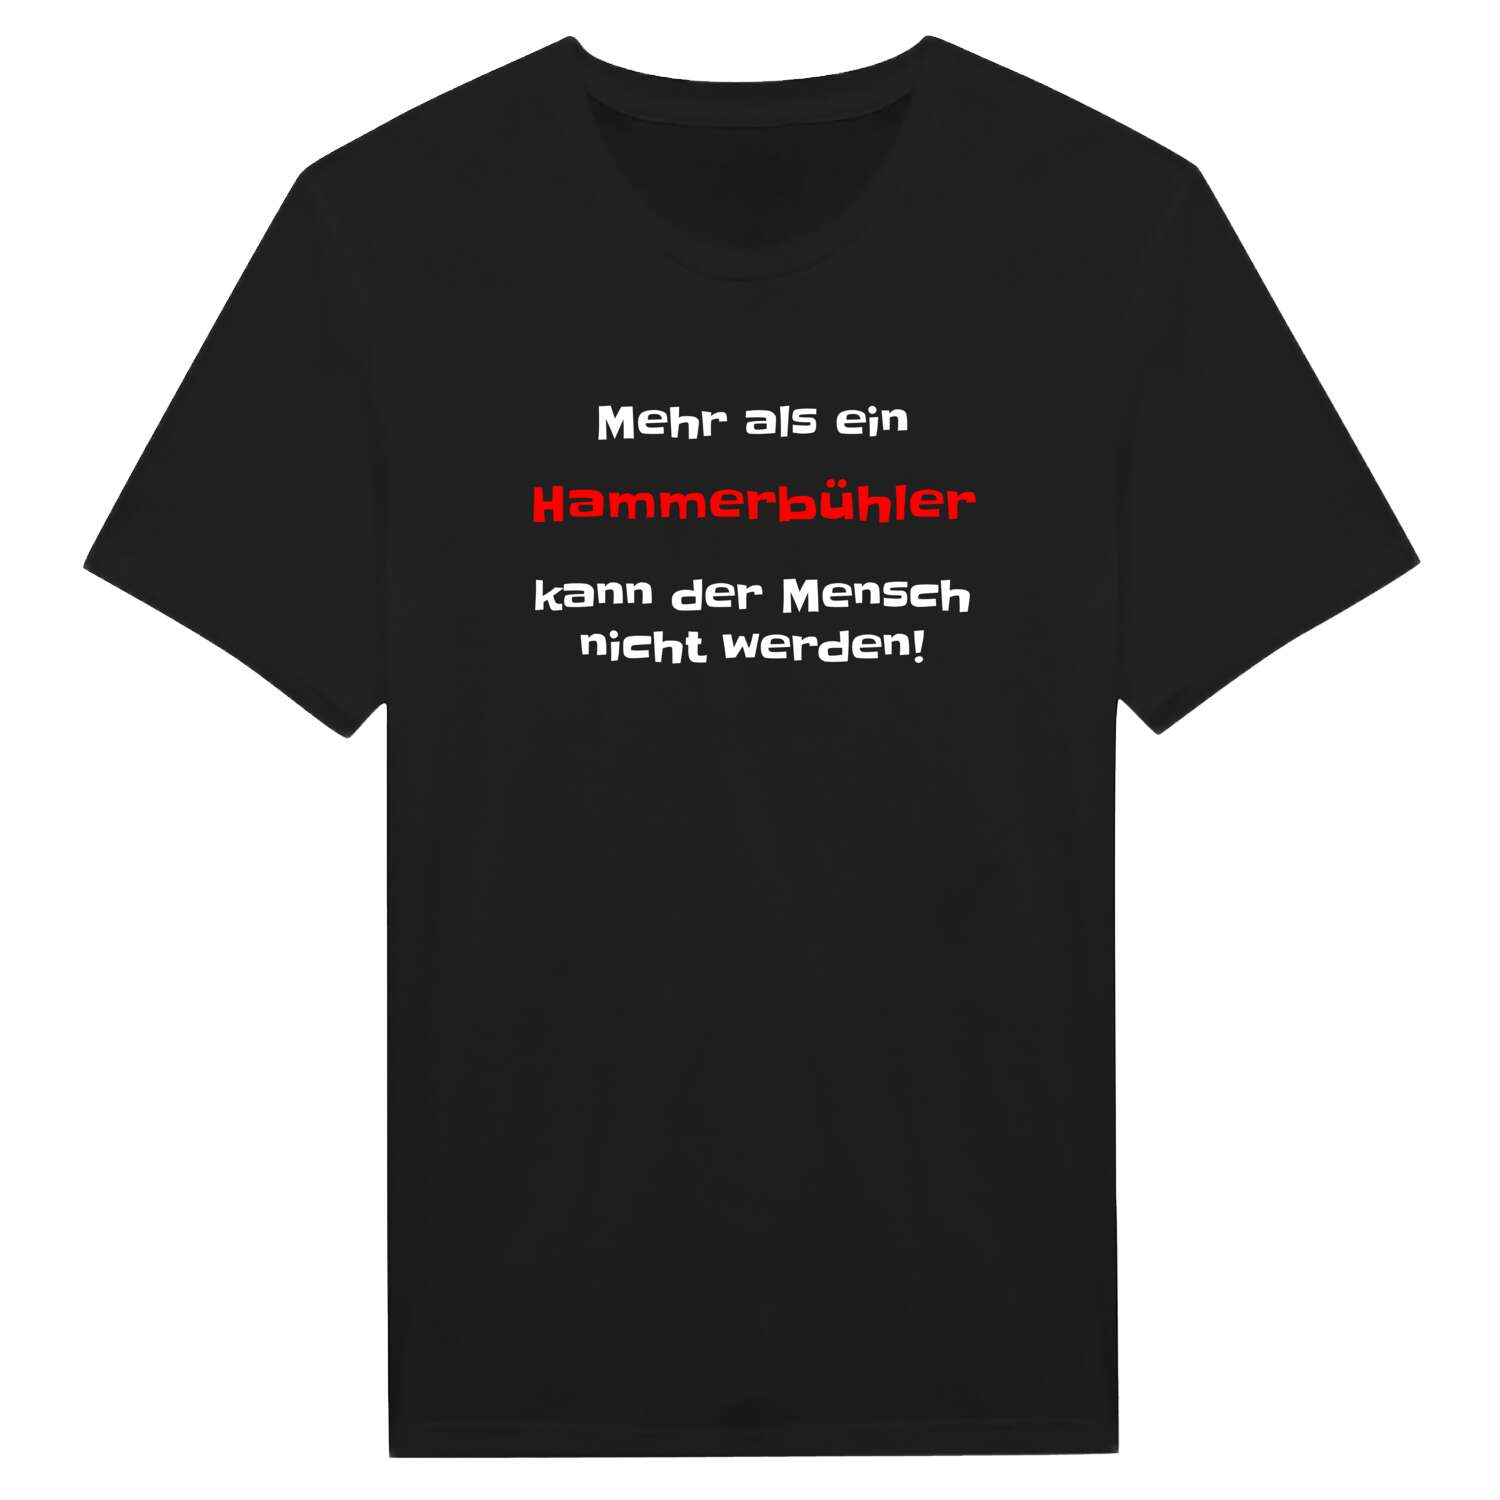 Hammerbühl T-Shirt »Mehr als ein«